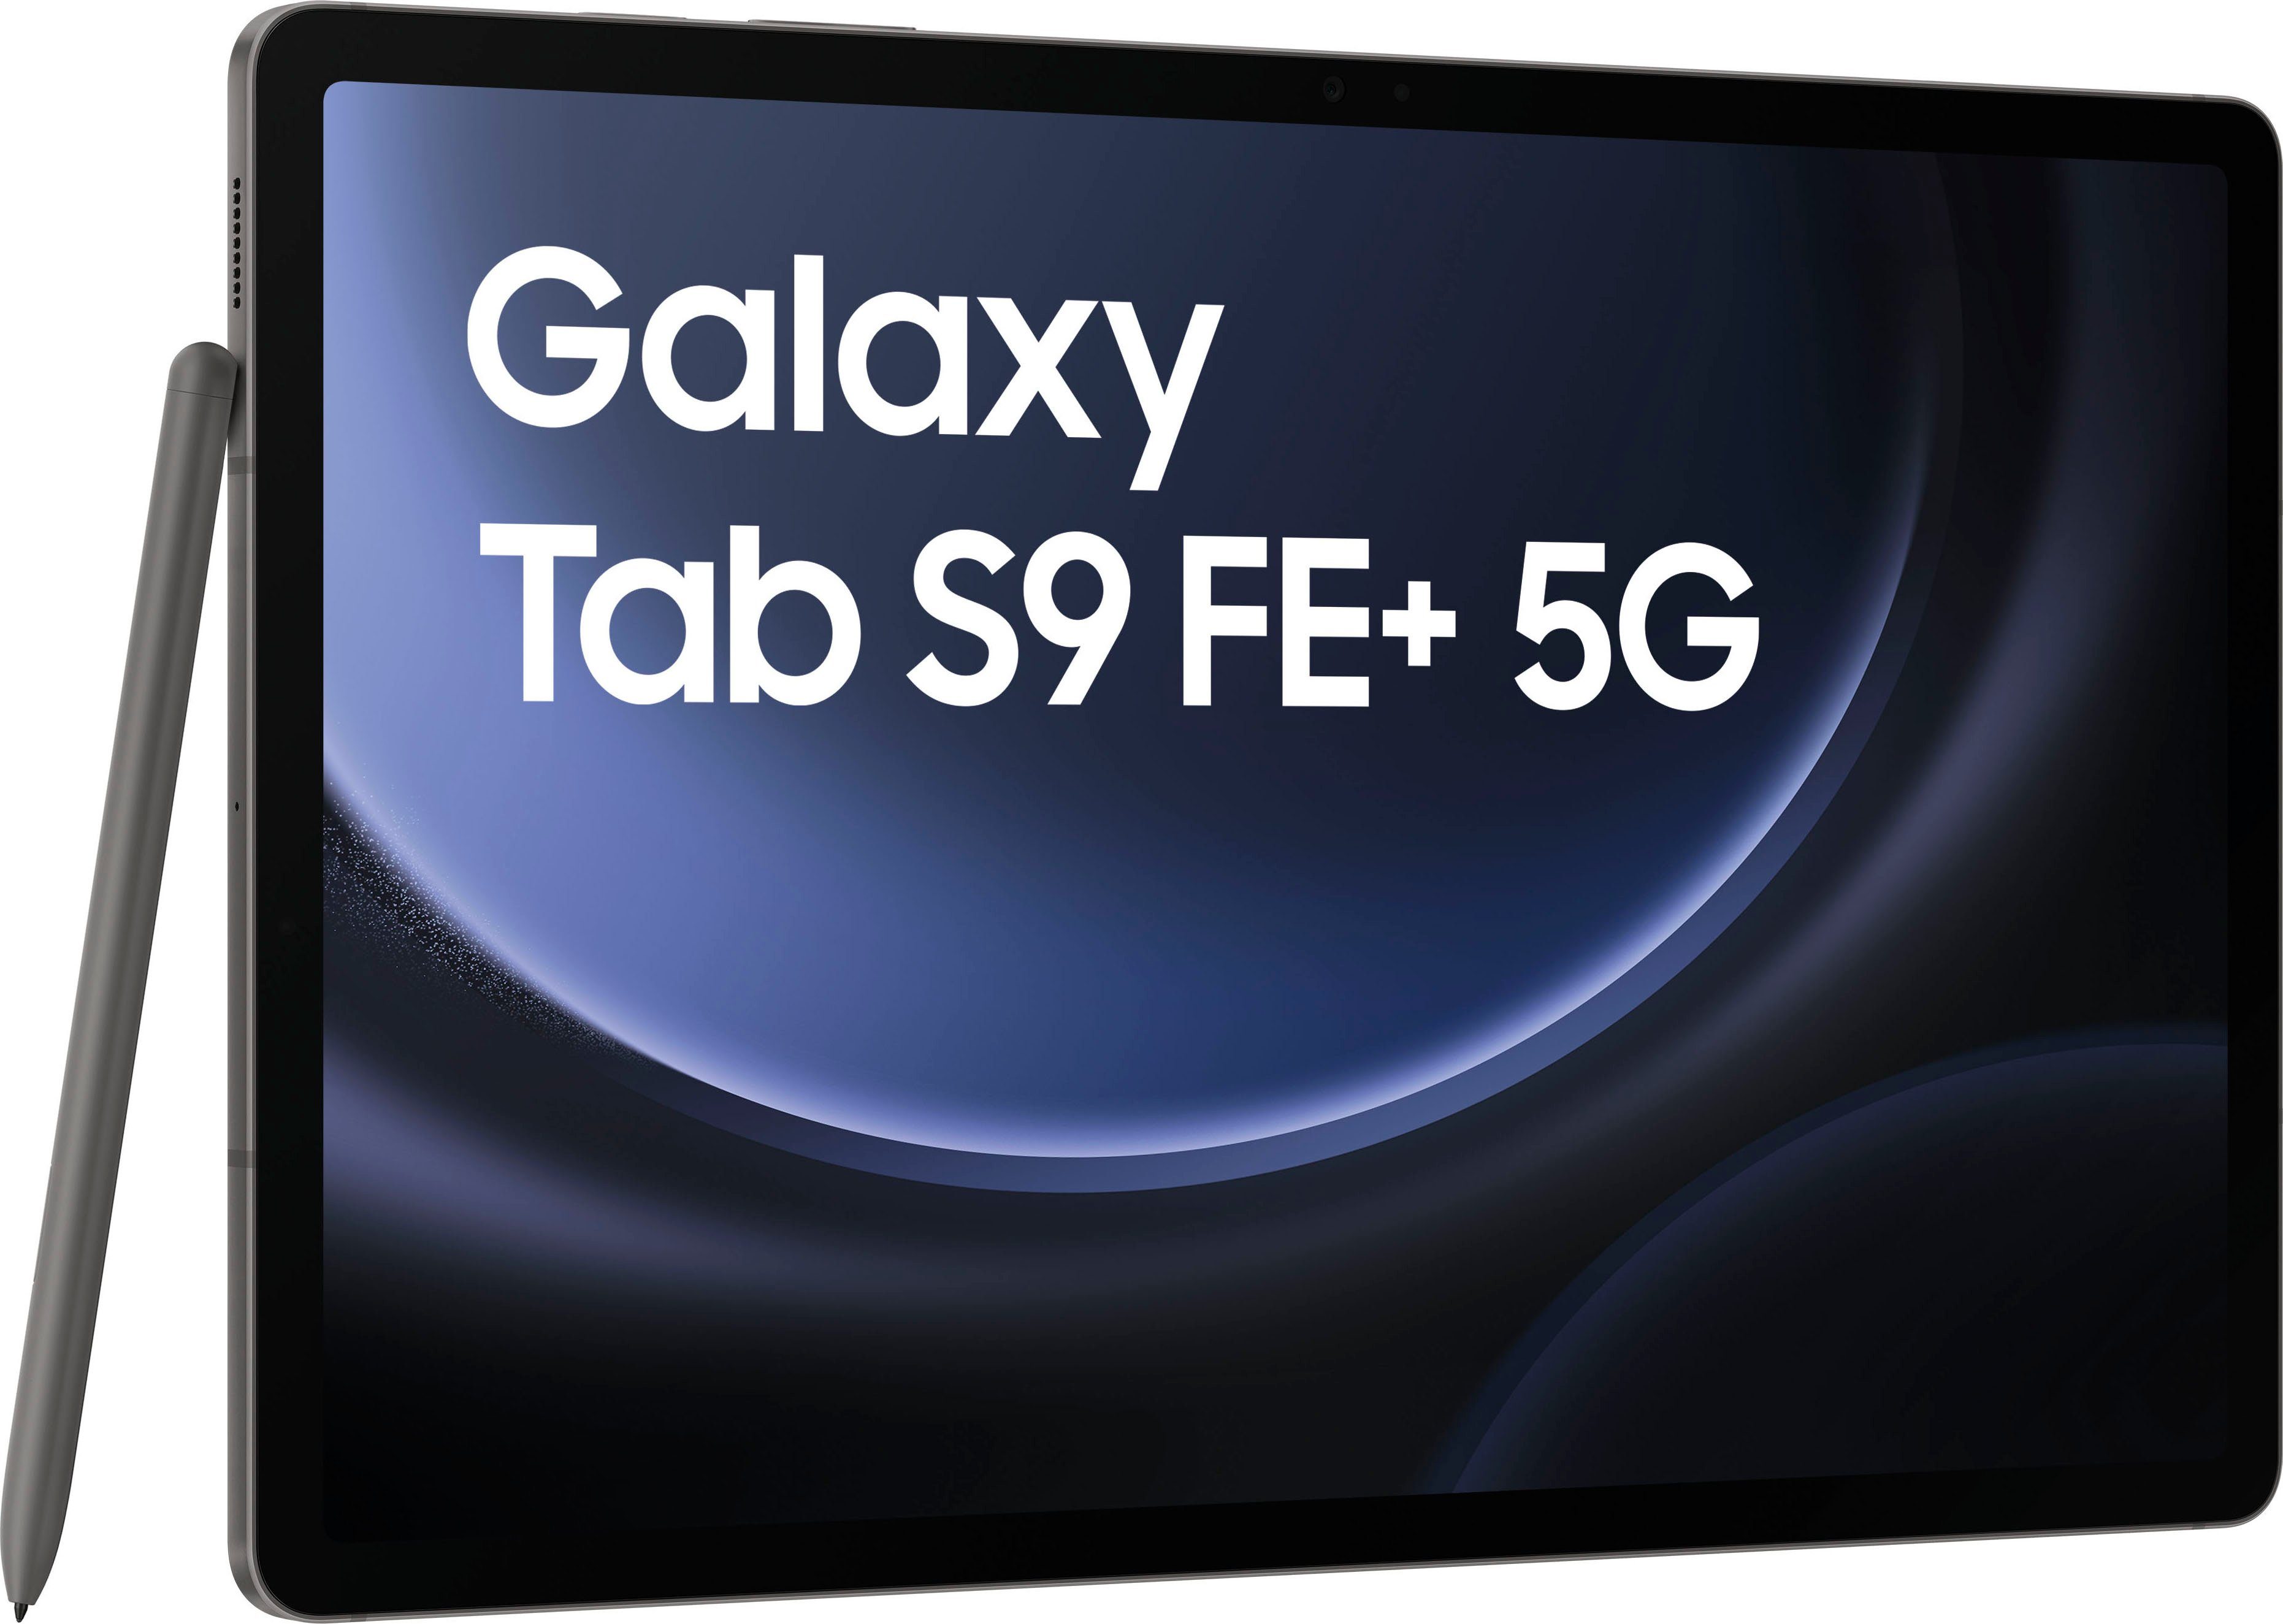 (12,4", S9 GB, Samsung Android,One UI,Knox, 128 FE+ grau Galaxy Tablet 5G) 5G Tab